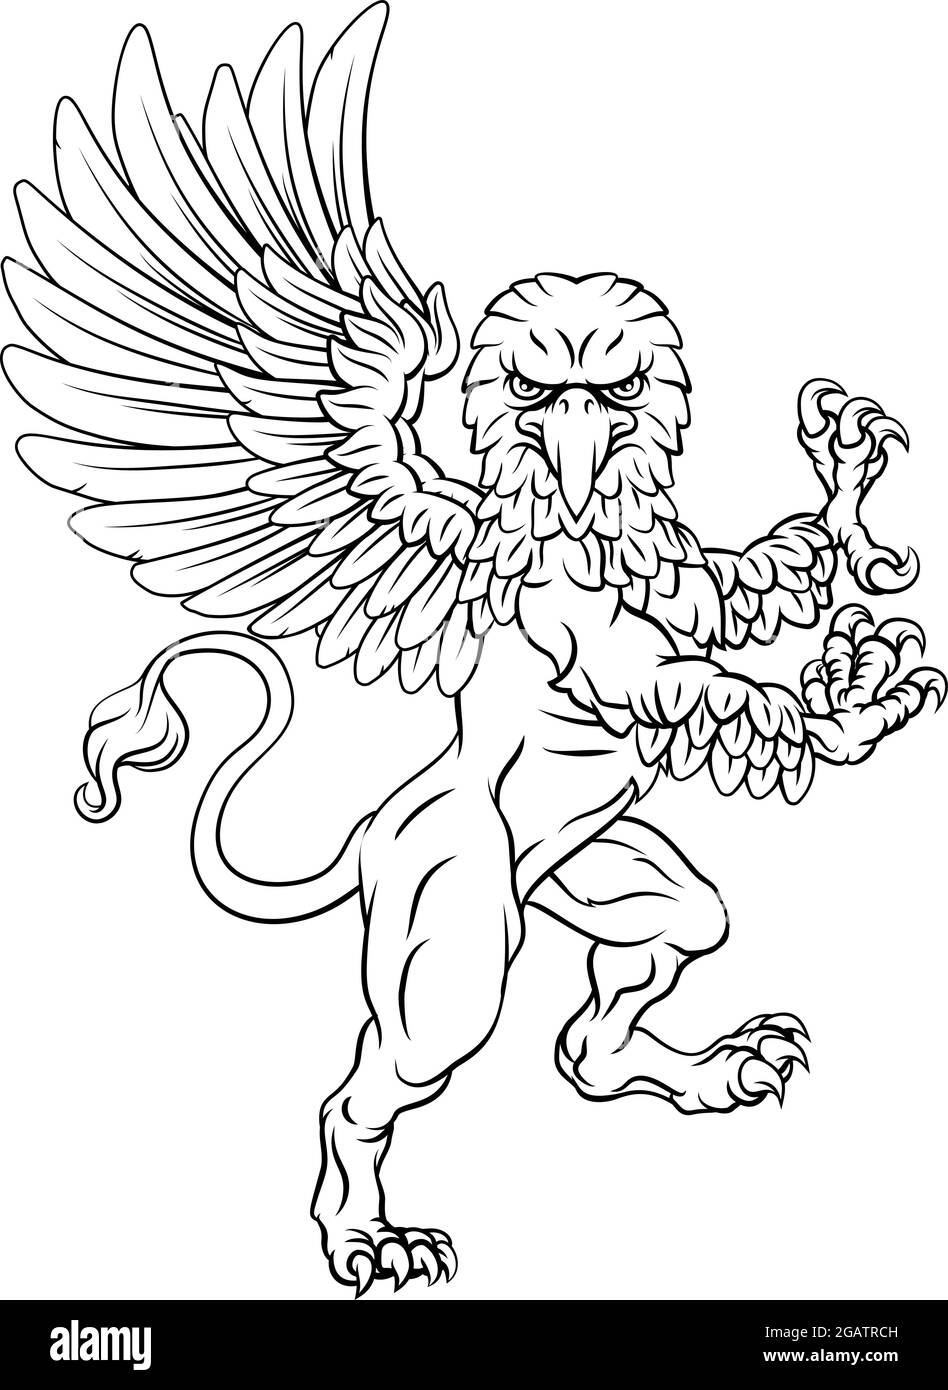 Griffon rampant de Gryphon Coat of Arms Crest Mascot Illustration de Vecteur